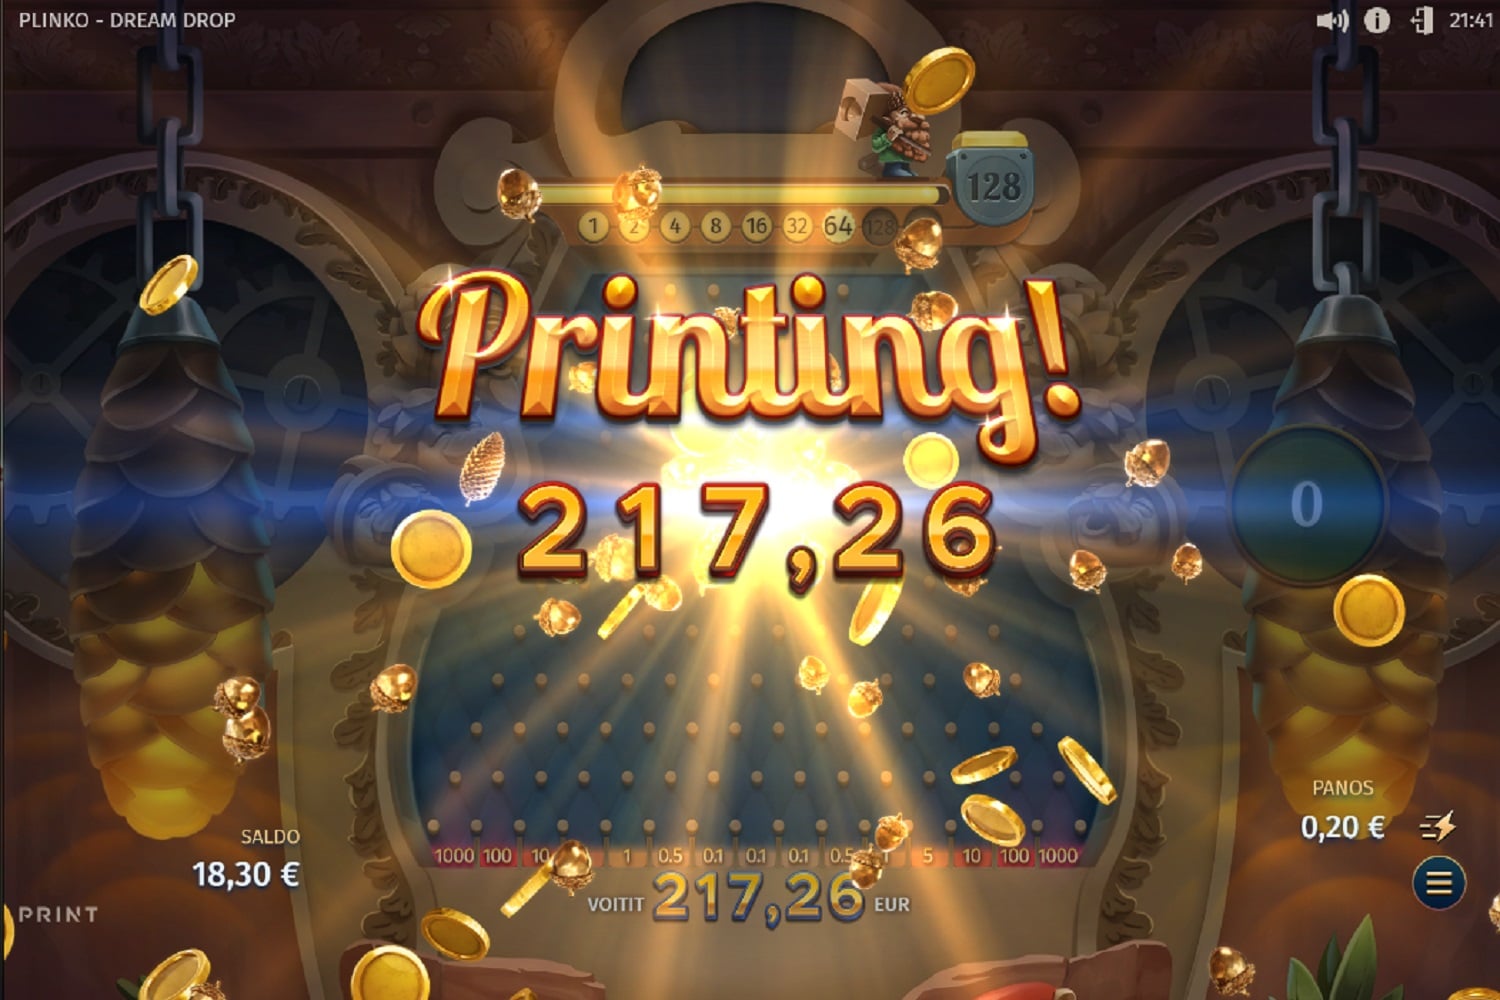 Plinko Dream Drop Casino win picture by Weedorf 217.26€ 1086.3x 12.10.2023 Spinz